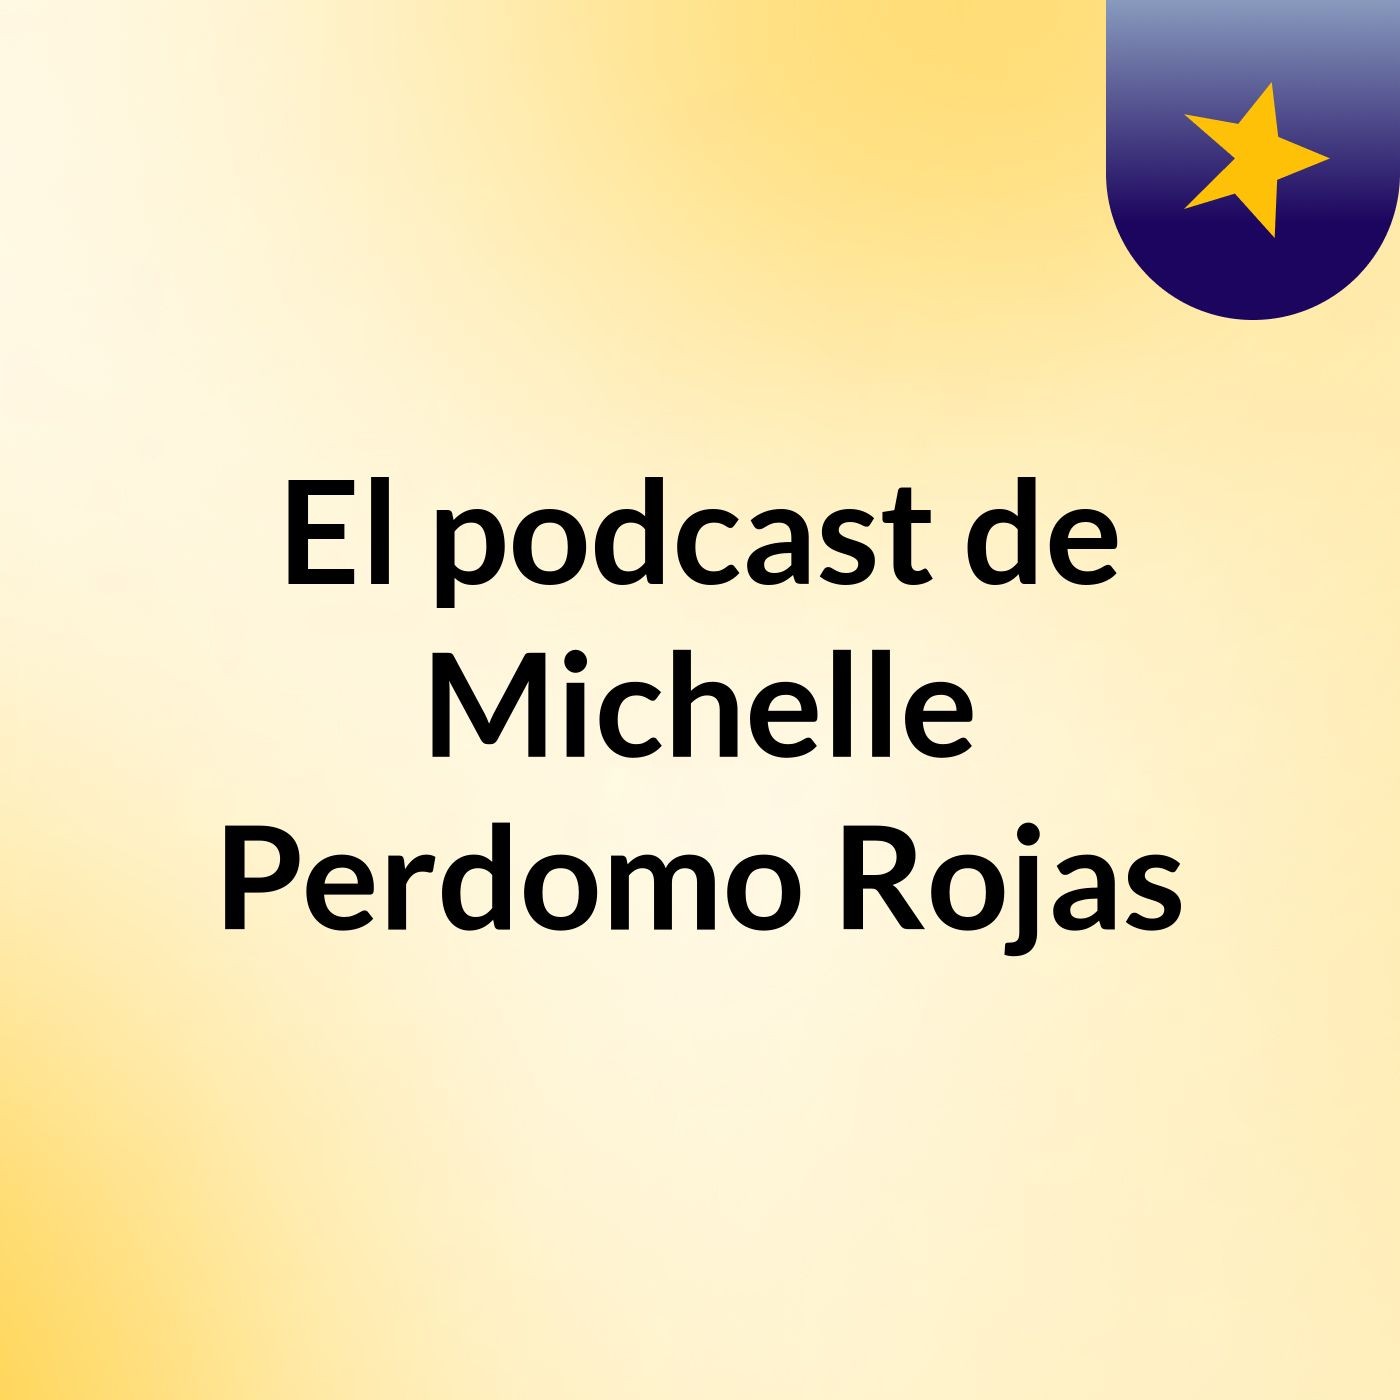 El podcast de Michelle Perdomo Rojas